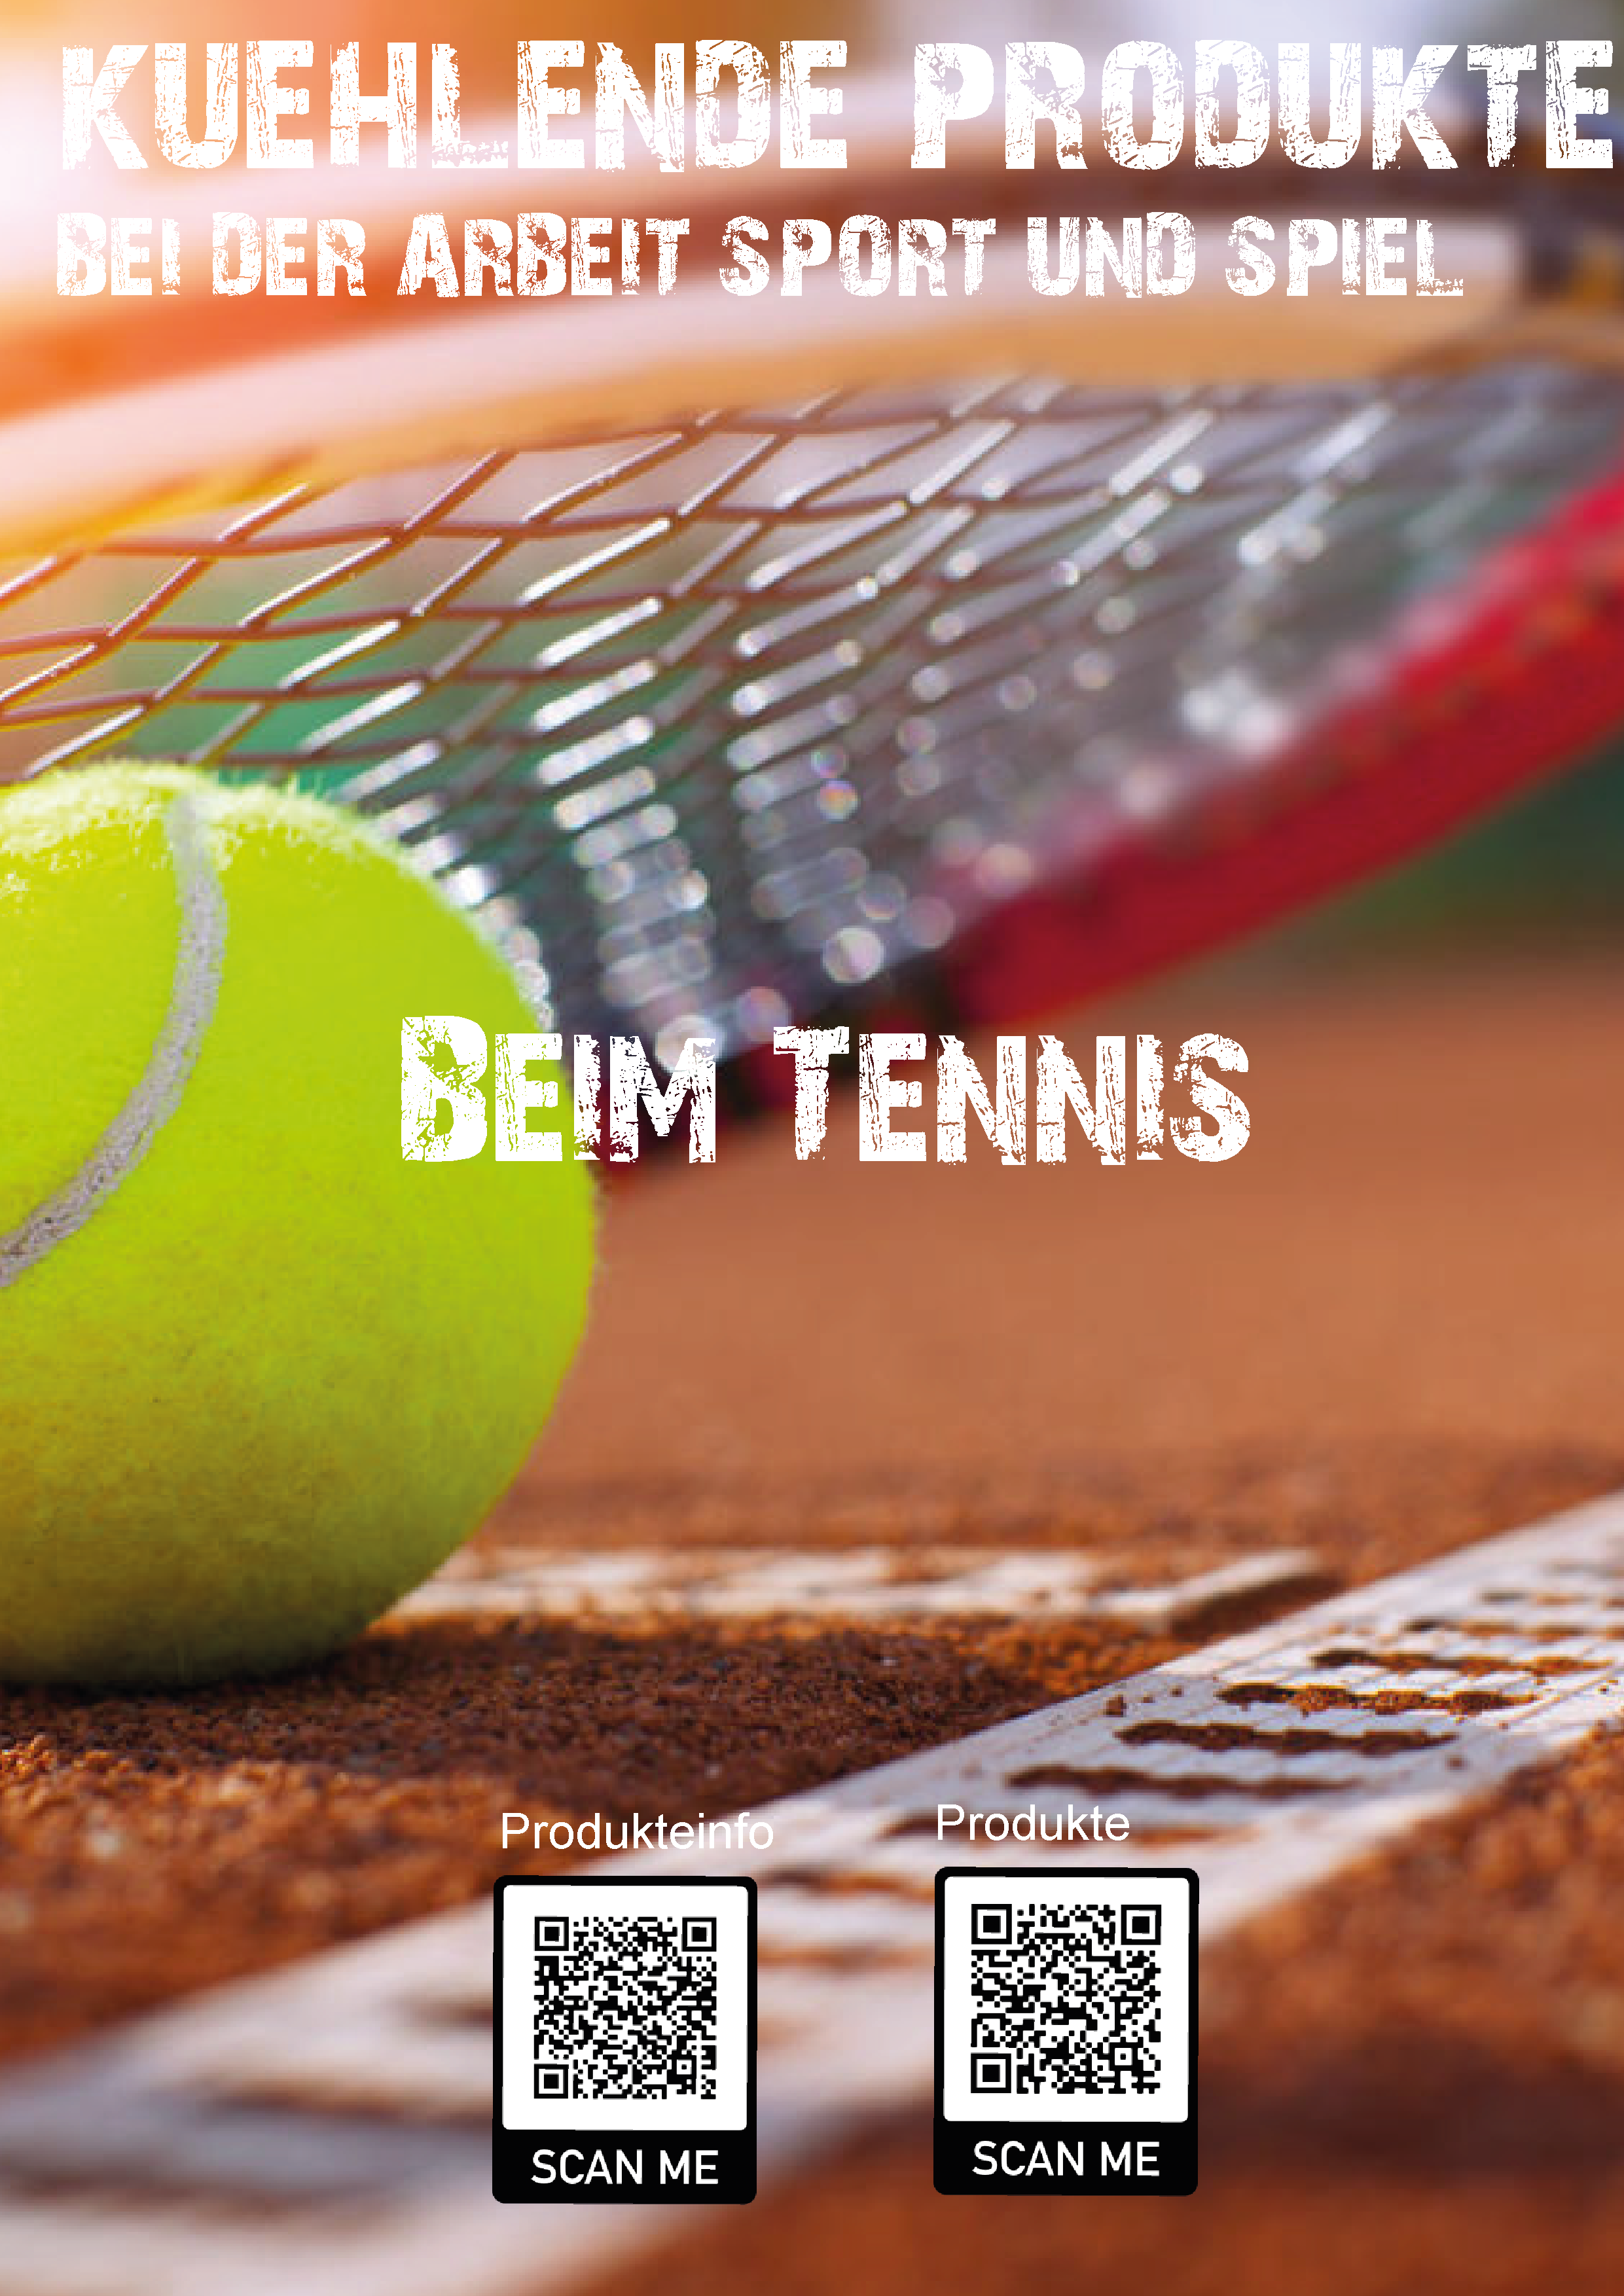 image-11752544-Tennis_Image-01-9bf31.w640.png